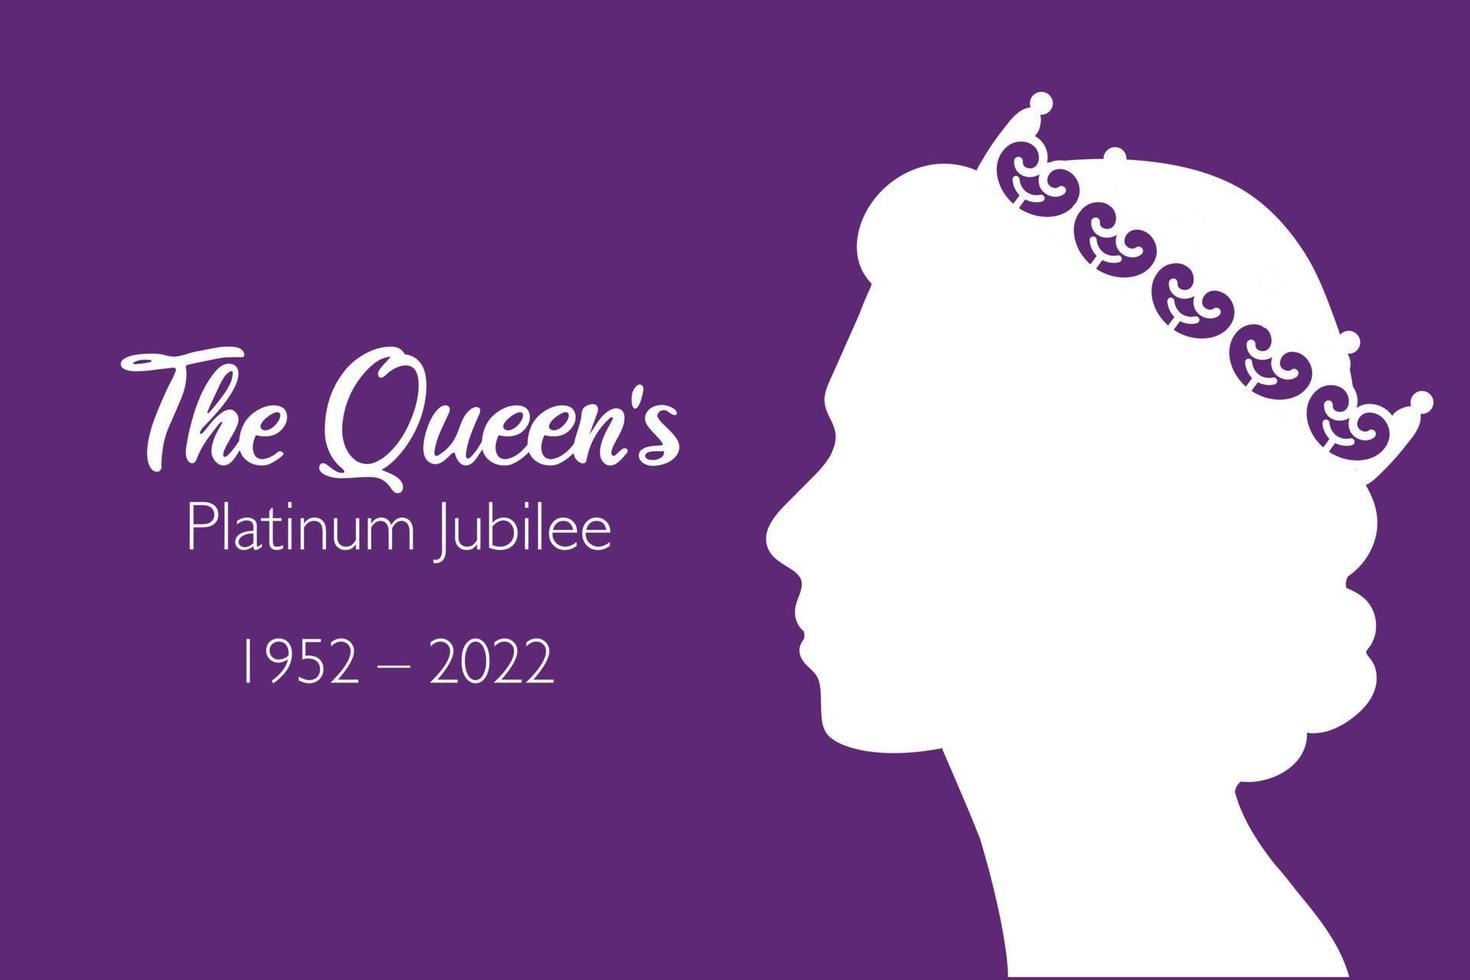 faixa de comemoração do jubileu de platina da rainha com perfil lateral da rainha elizabeth na coroa 70 anos. design ideal para banners, flayers, mídias sociais, adesivos, cartões comemorativos. vetor